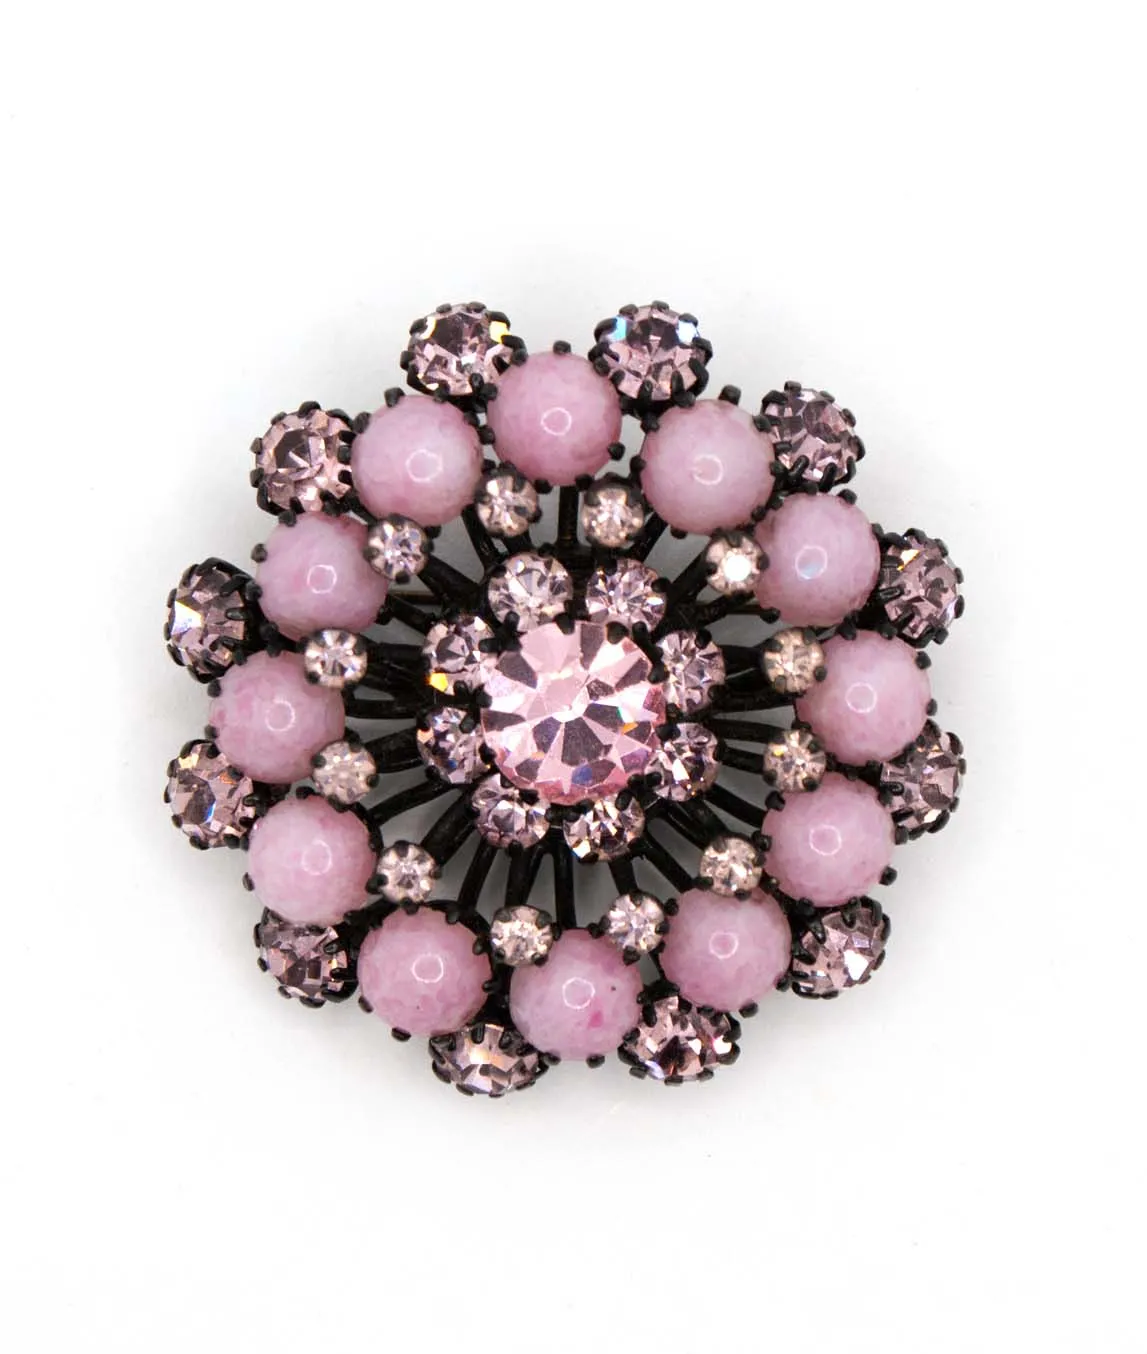 Pastel pink cluster brooch with pink rhinestones set on black metal